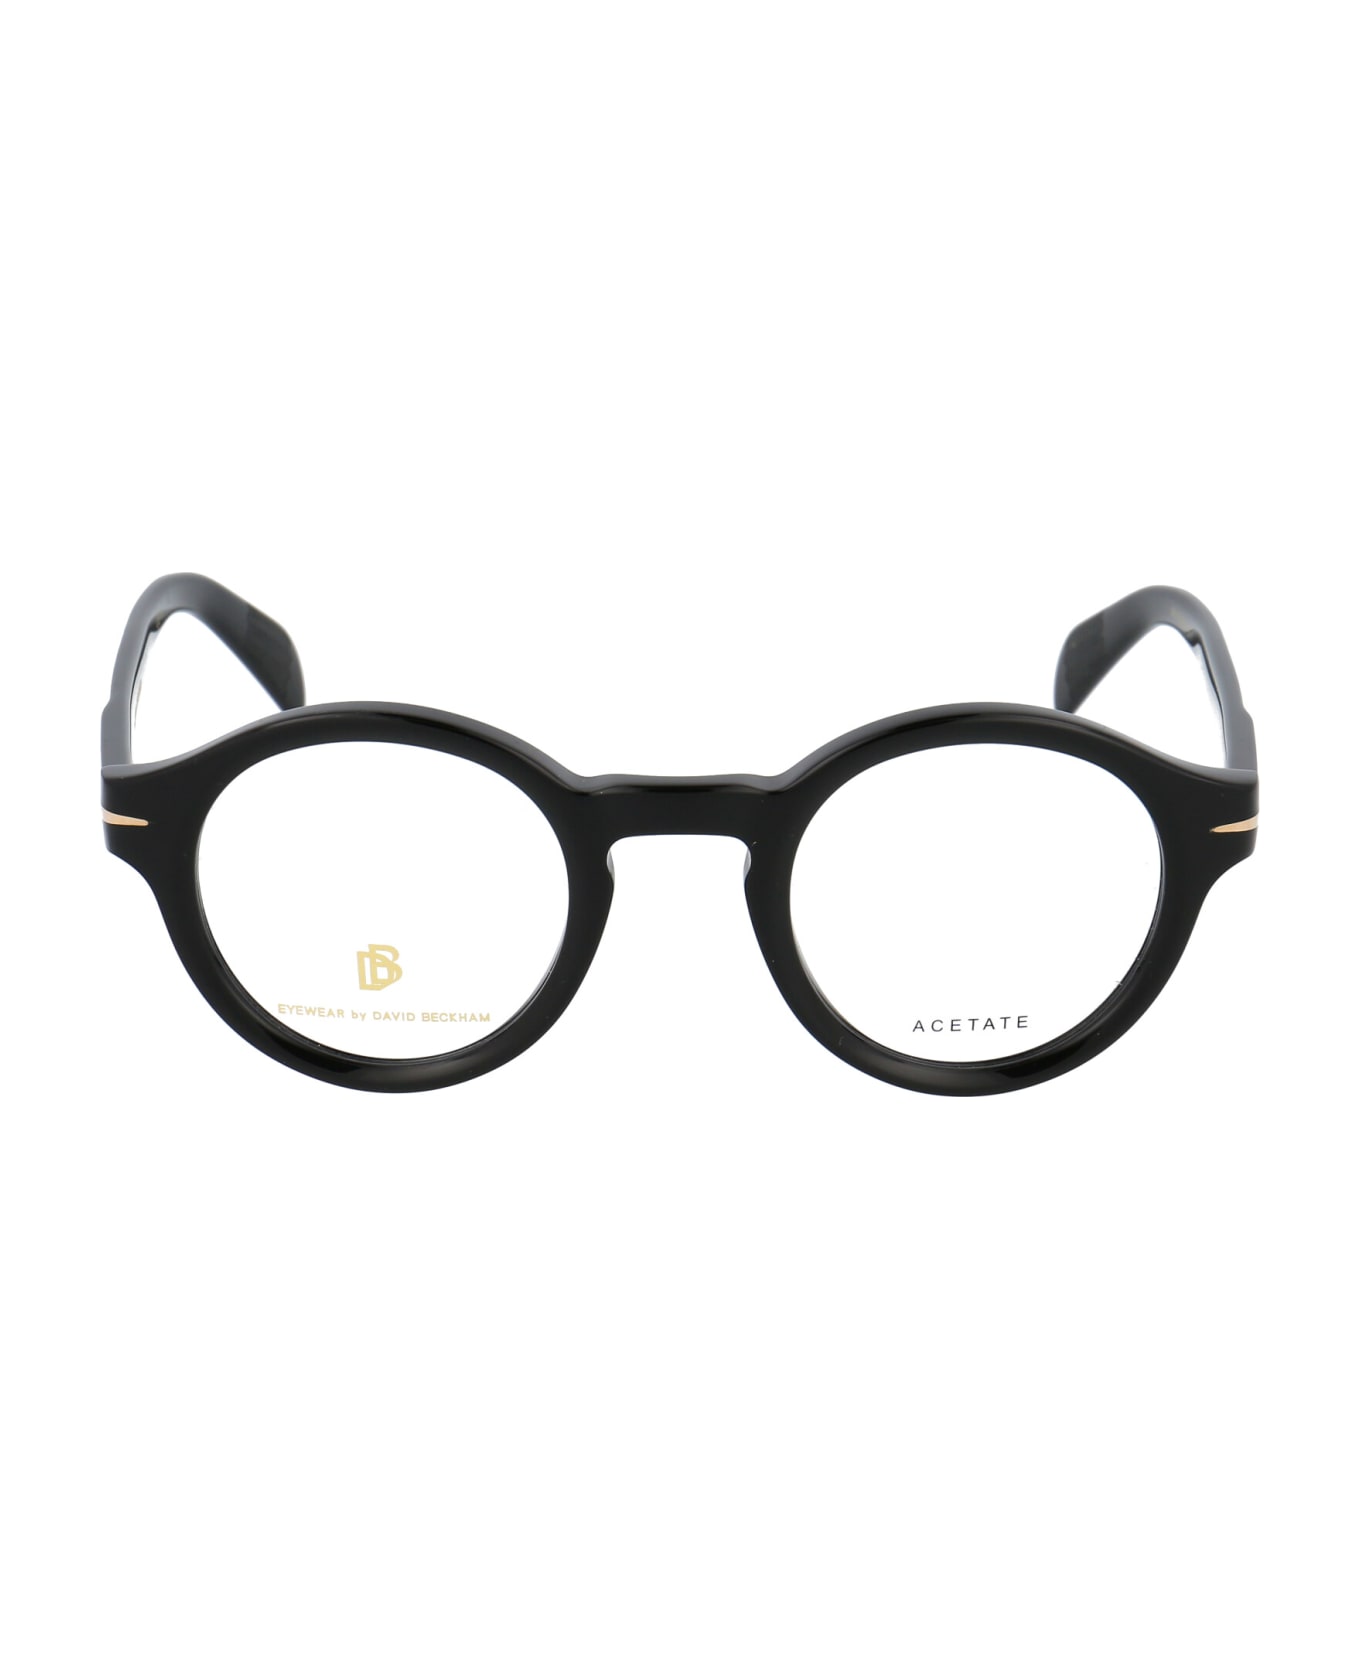 DB Eyewear by David Beckham Db 7051 Glasses - 2M2 BLACK GOLD アイウェア